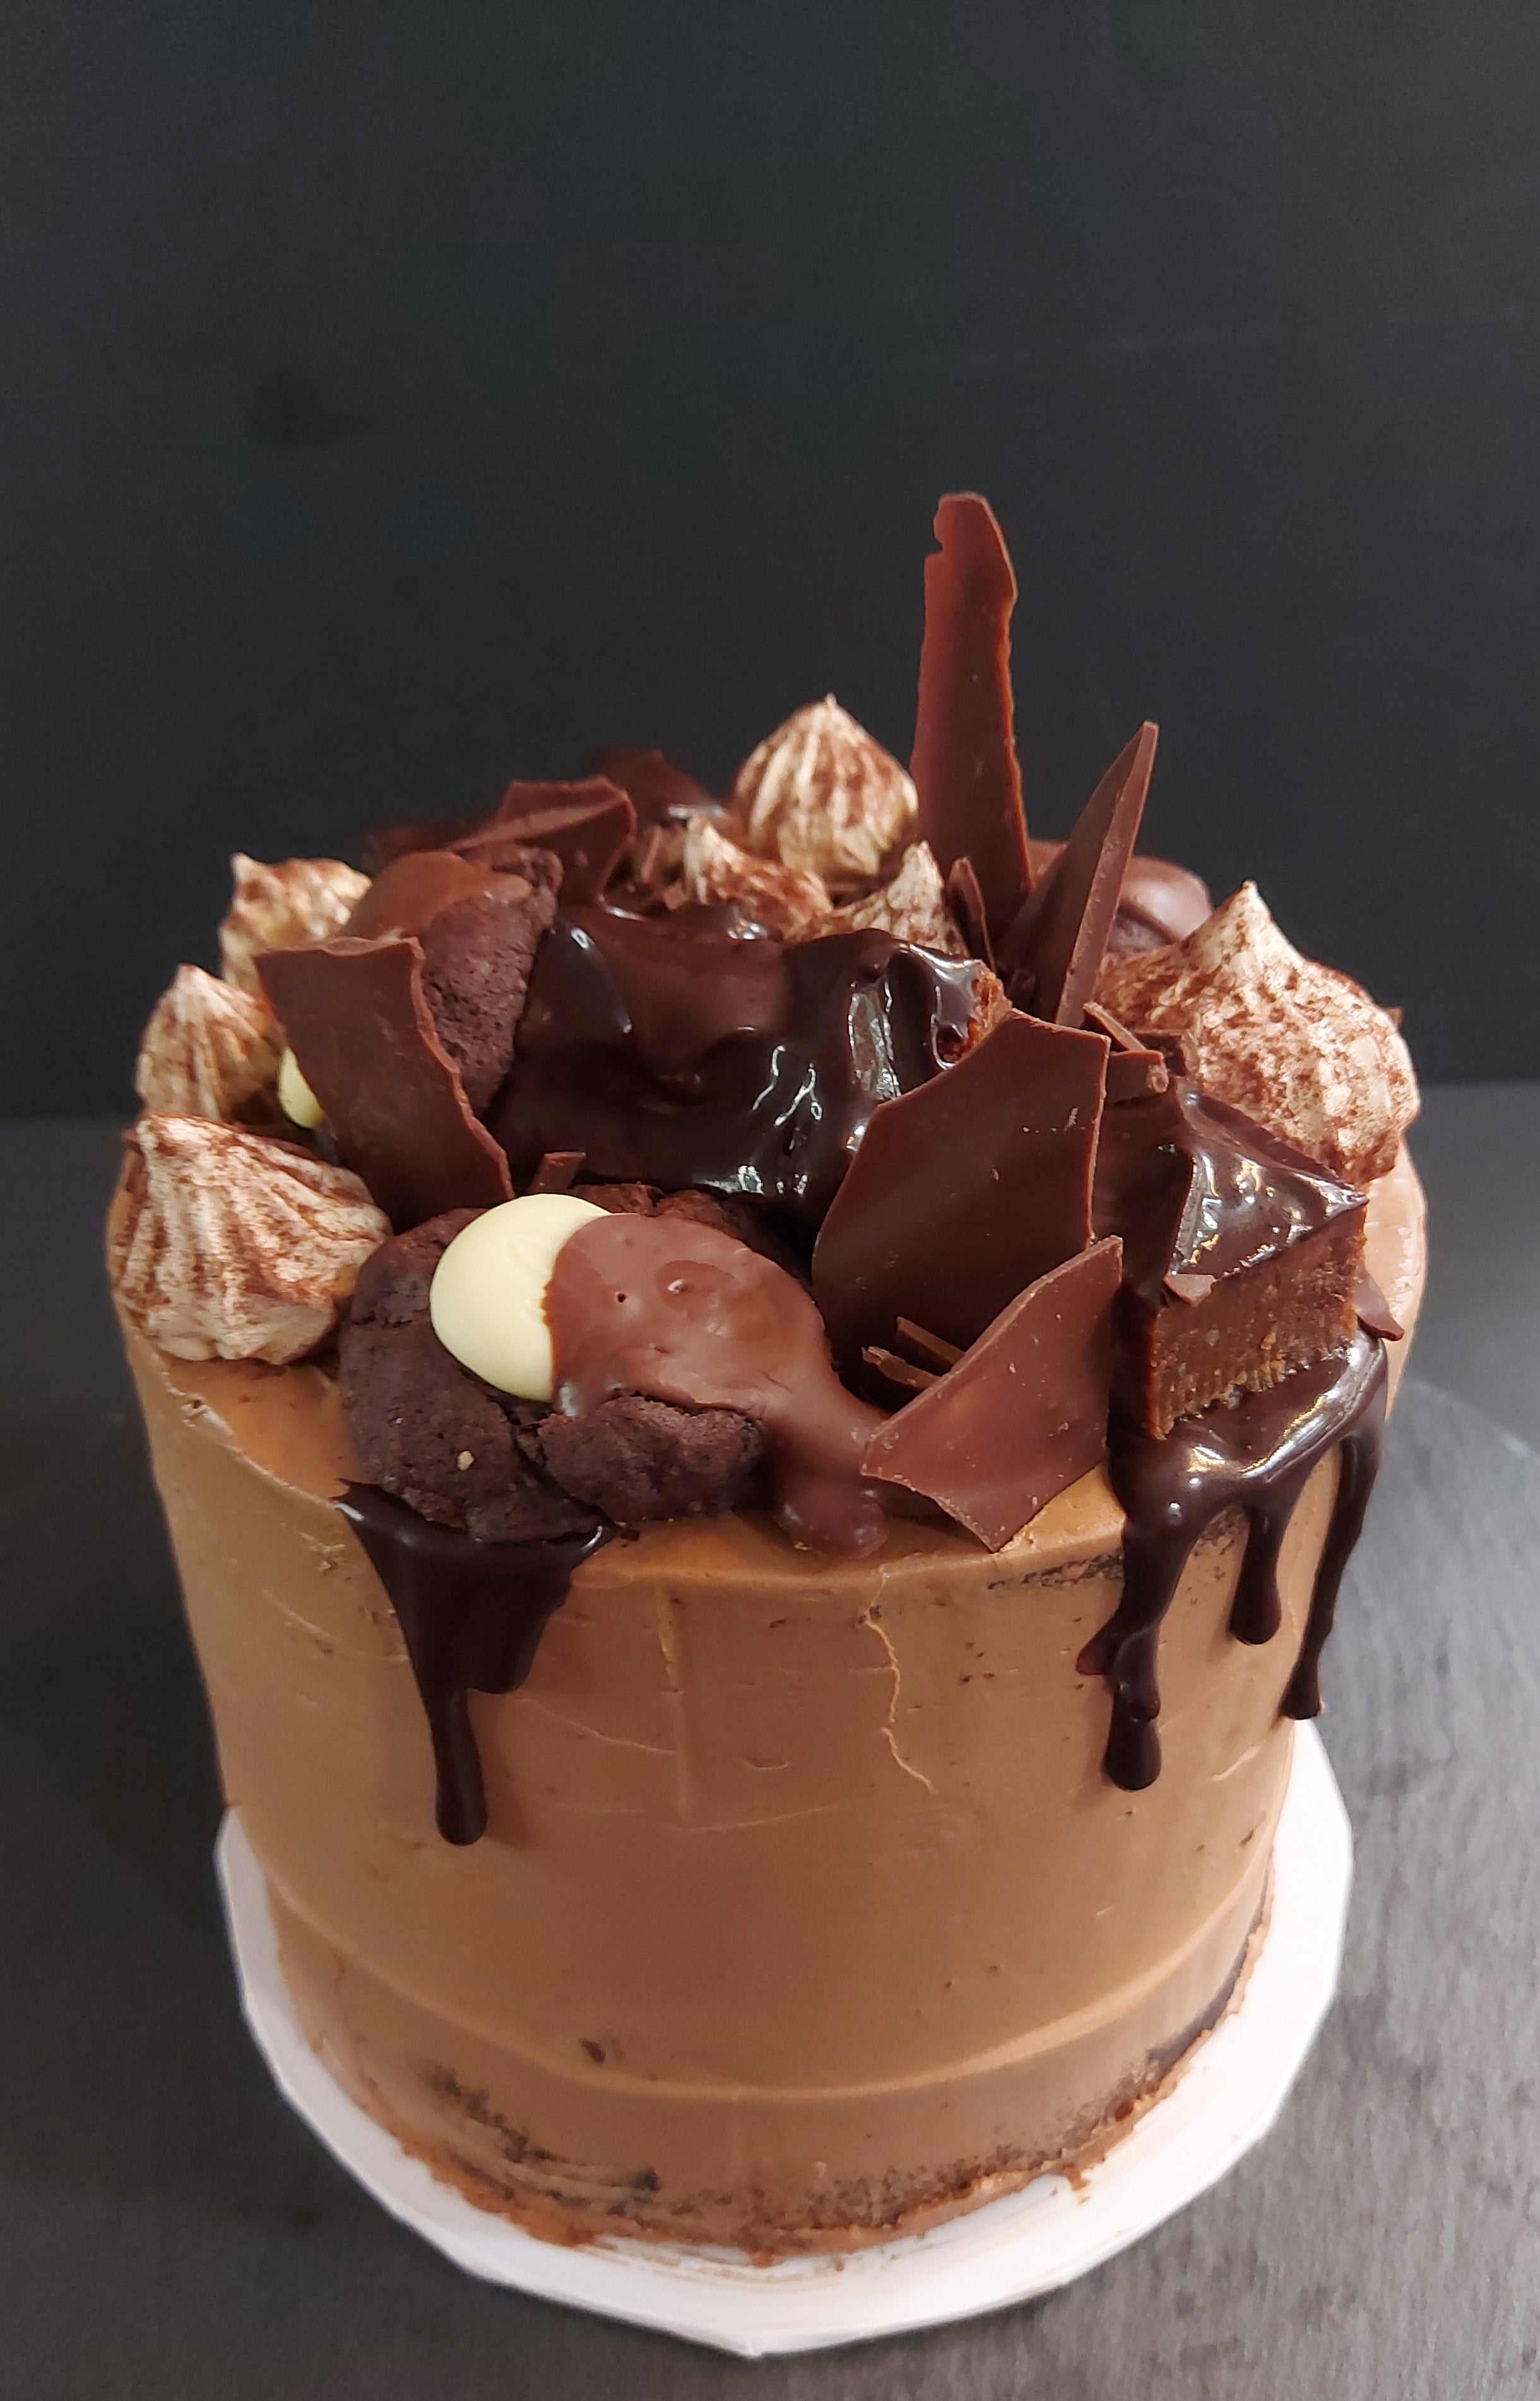 OOH SCHOKOOH CAKE mit Drip und Schoko Sweets